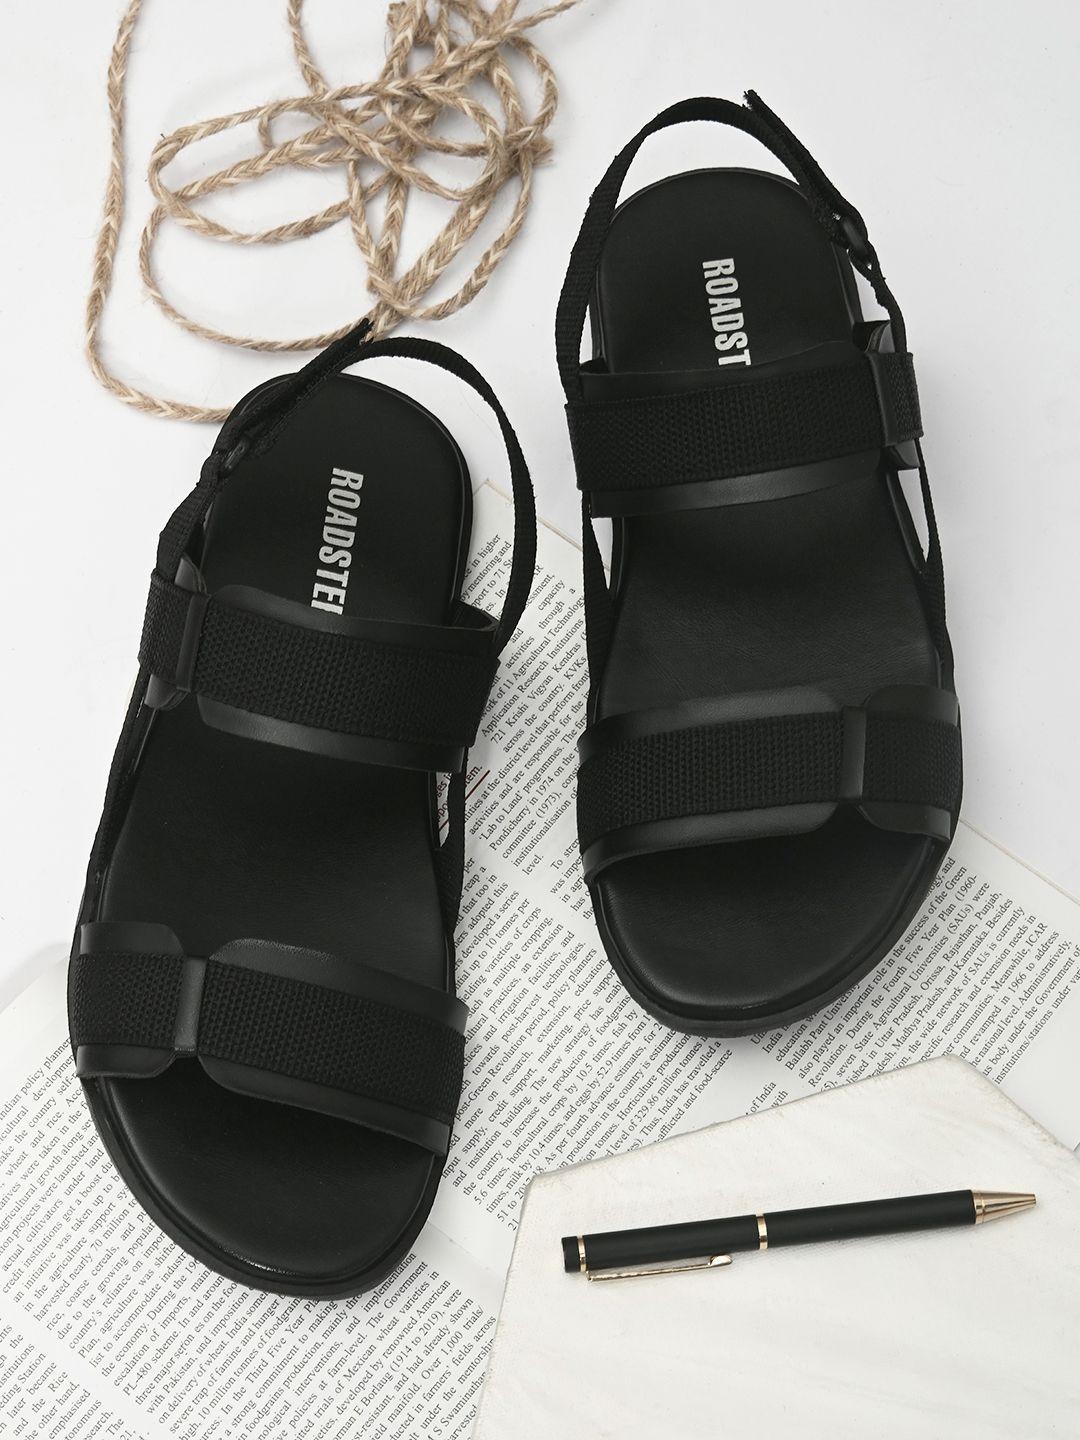 roadster-men-black-comfort-sandals